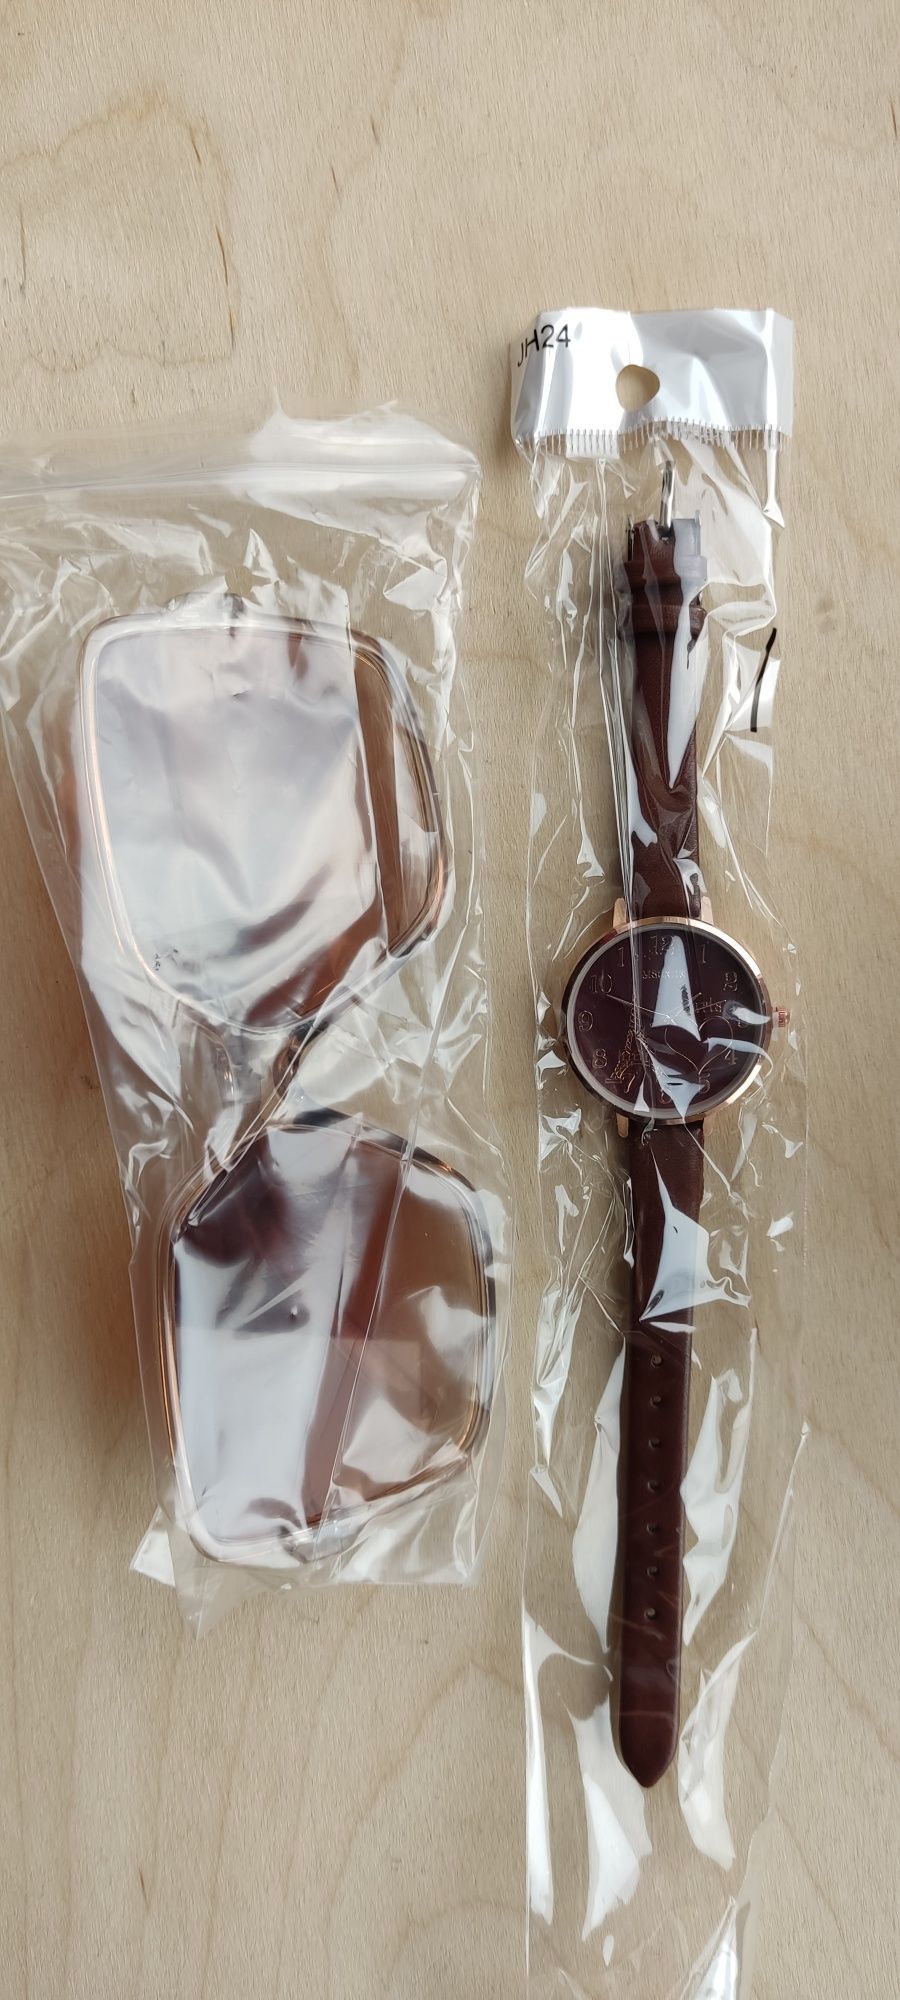 Nowy zestaw okulary przeciwsłoneczne i zegarek damski brązowy